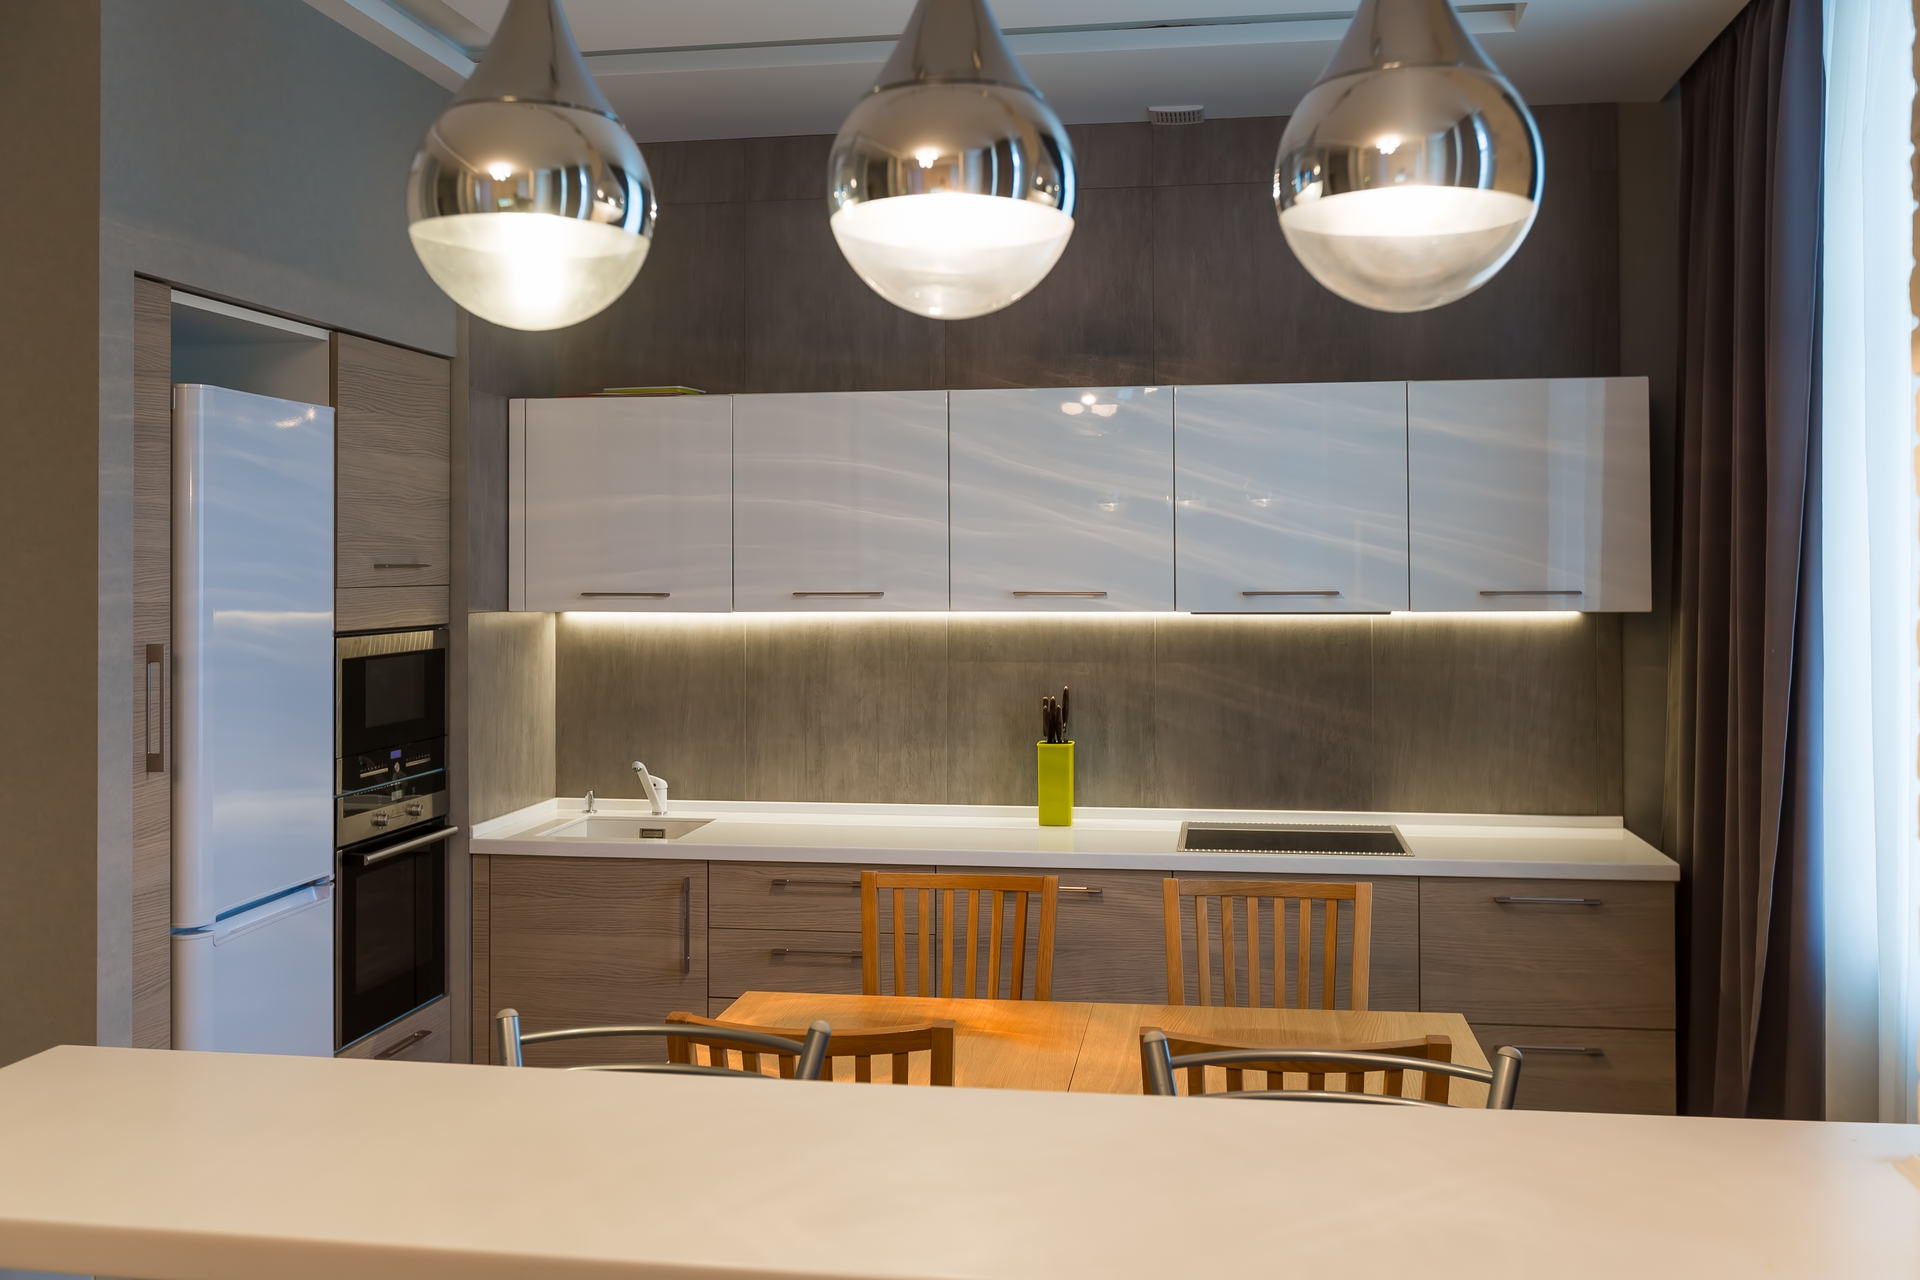 070130068-modern-kitchen-interior-new-lu.jpeg